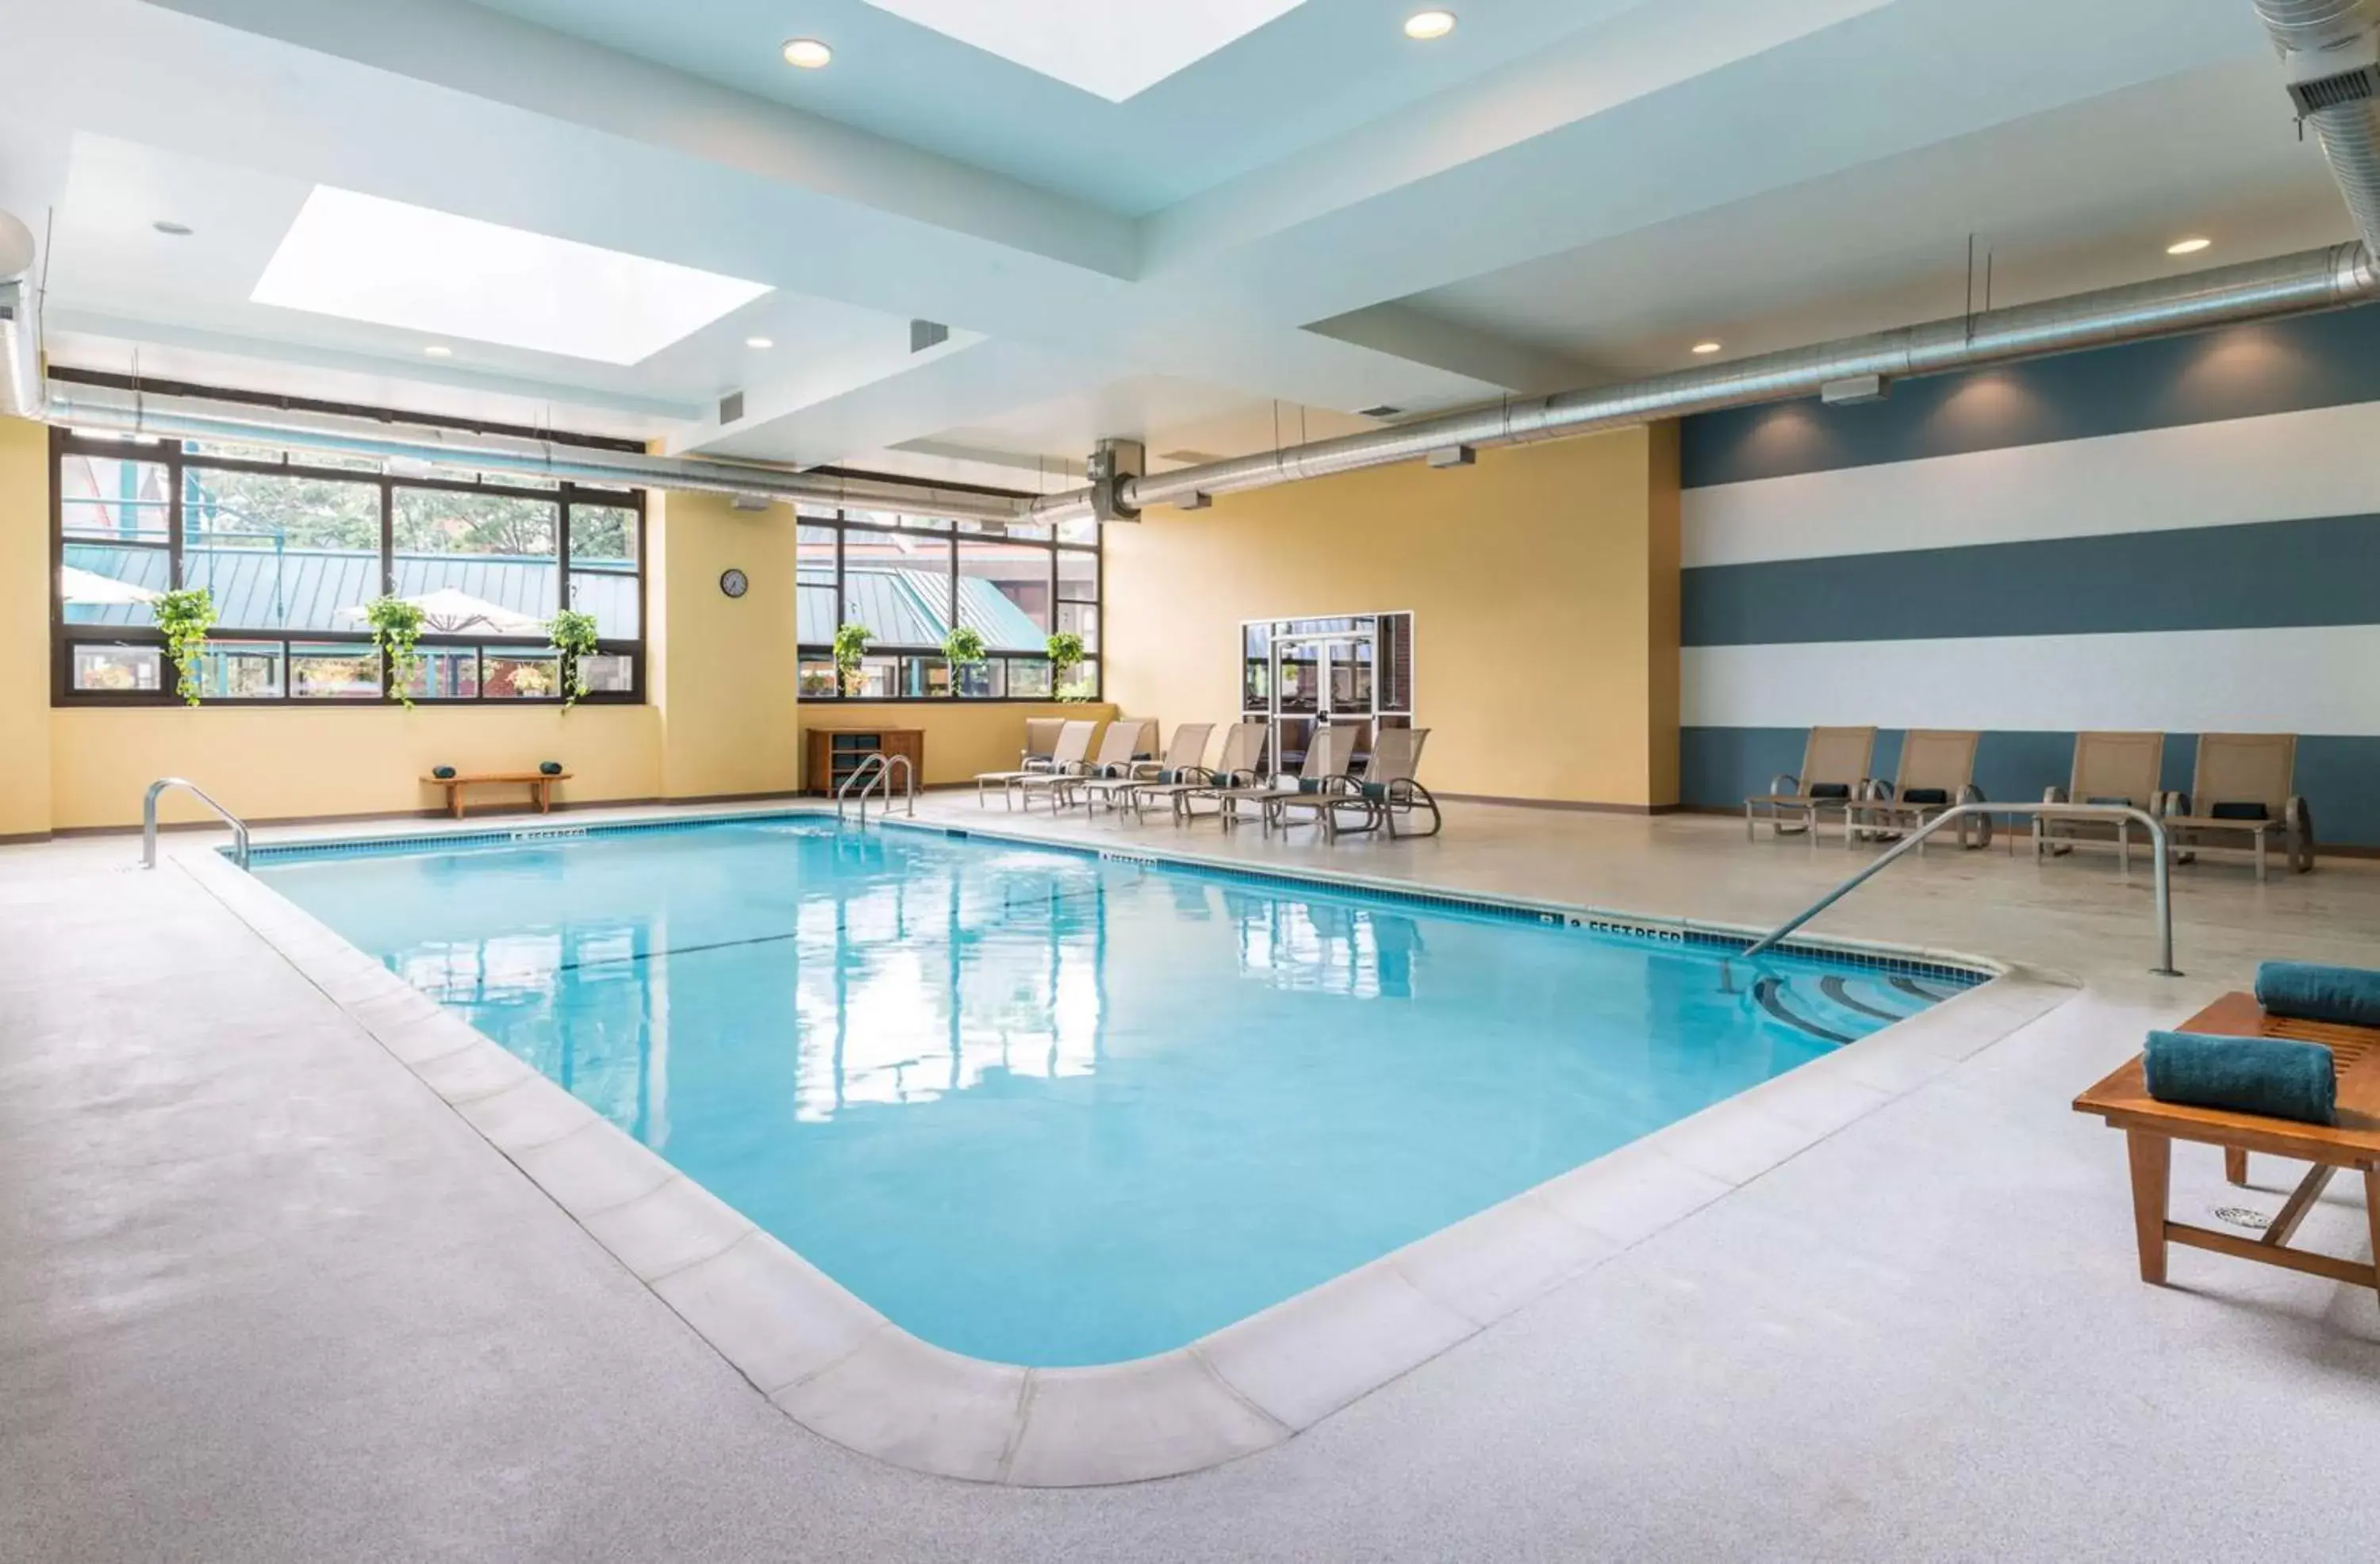 Pool view, Swimming Pool in The Saratoga Hilton